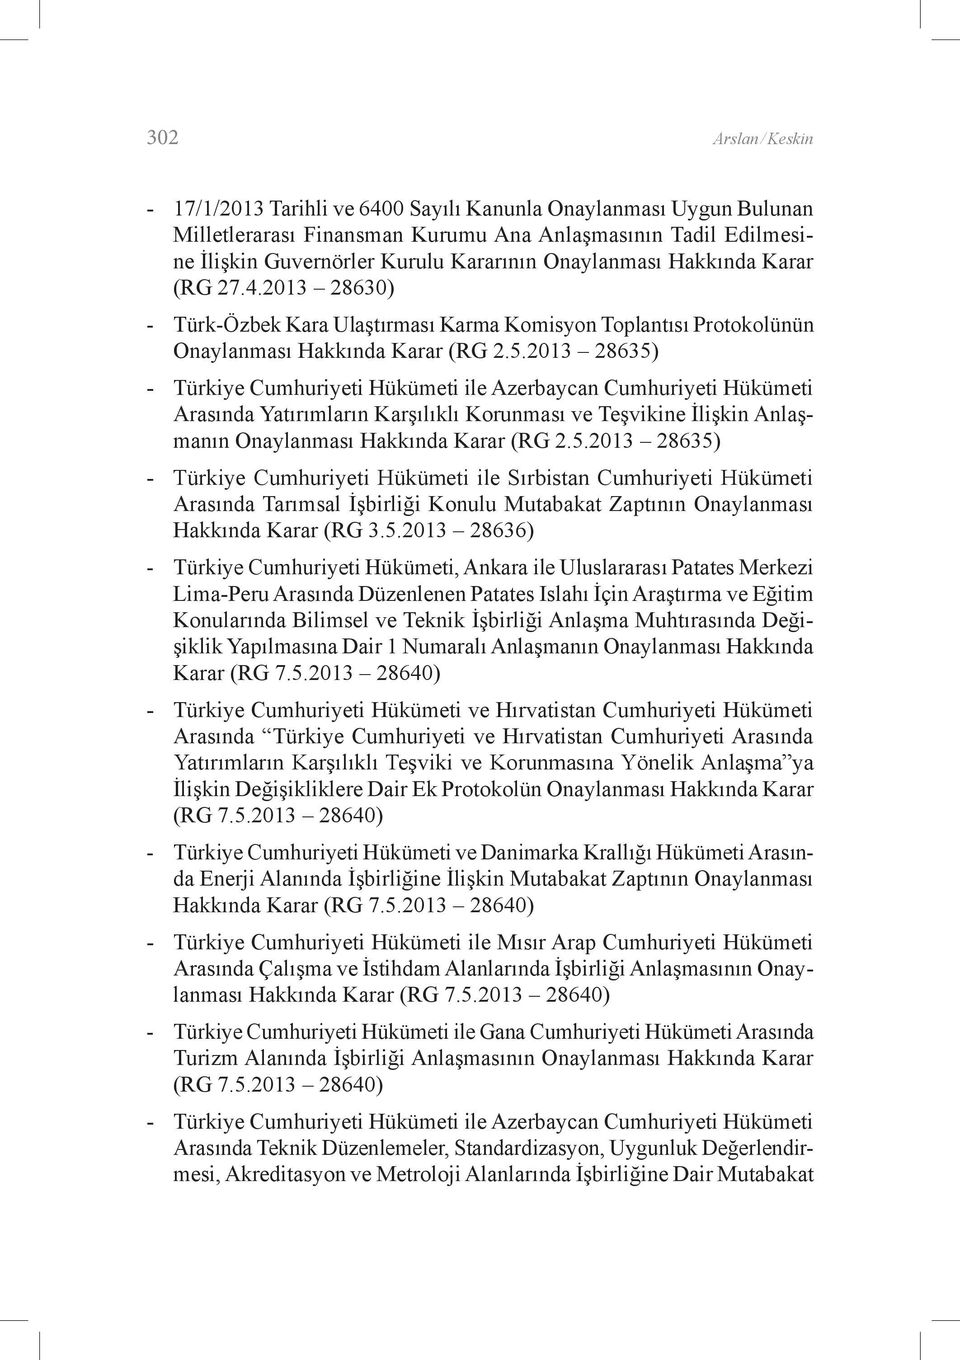 2013 28635) - Türkiye Cumhuriyeti Hükümeti ile Azerbaycan Cumhuriyeti Hükümeti Arasında Yatırımların Karşılıklı Korunması ve Teşvikine İlişkin Anlaşmanın Onaylanması Hakkında Karar (RG 2.5.2013 28635) - Türkiye Cumhuriyeti Hükümeti ile Sırbistan Cumhuriyeti Hükümeti Arasında Tarımsal İşbirliği Konulu Mutabakat Zaptının Onaylanması Hakkında Karar (RG 3.